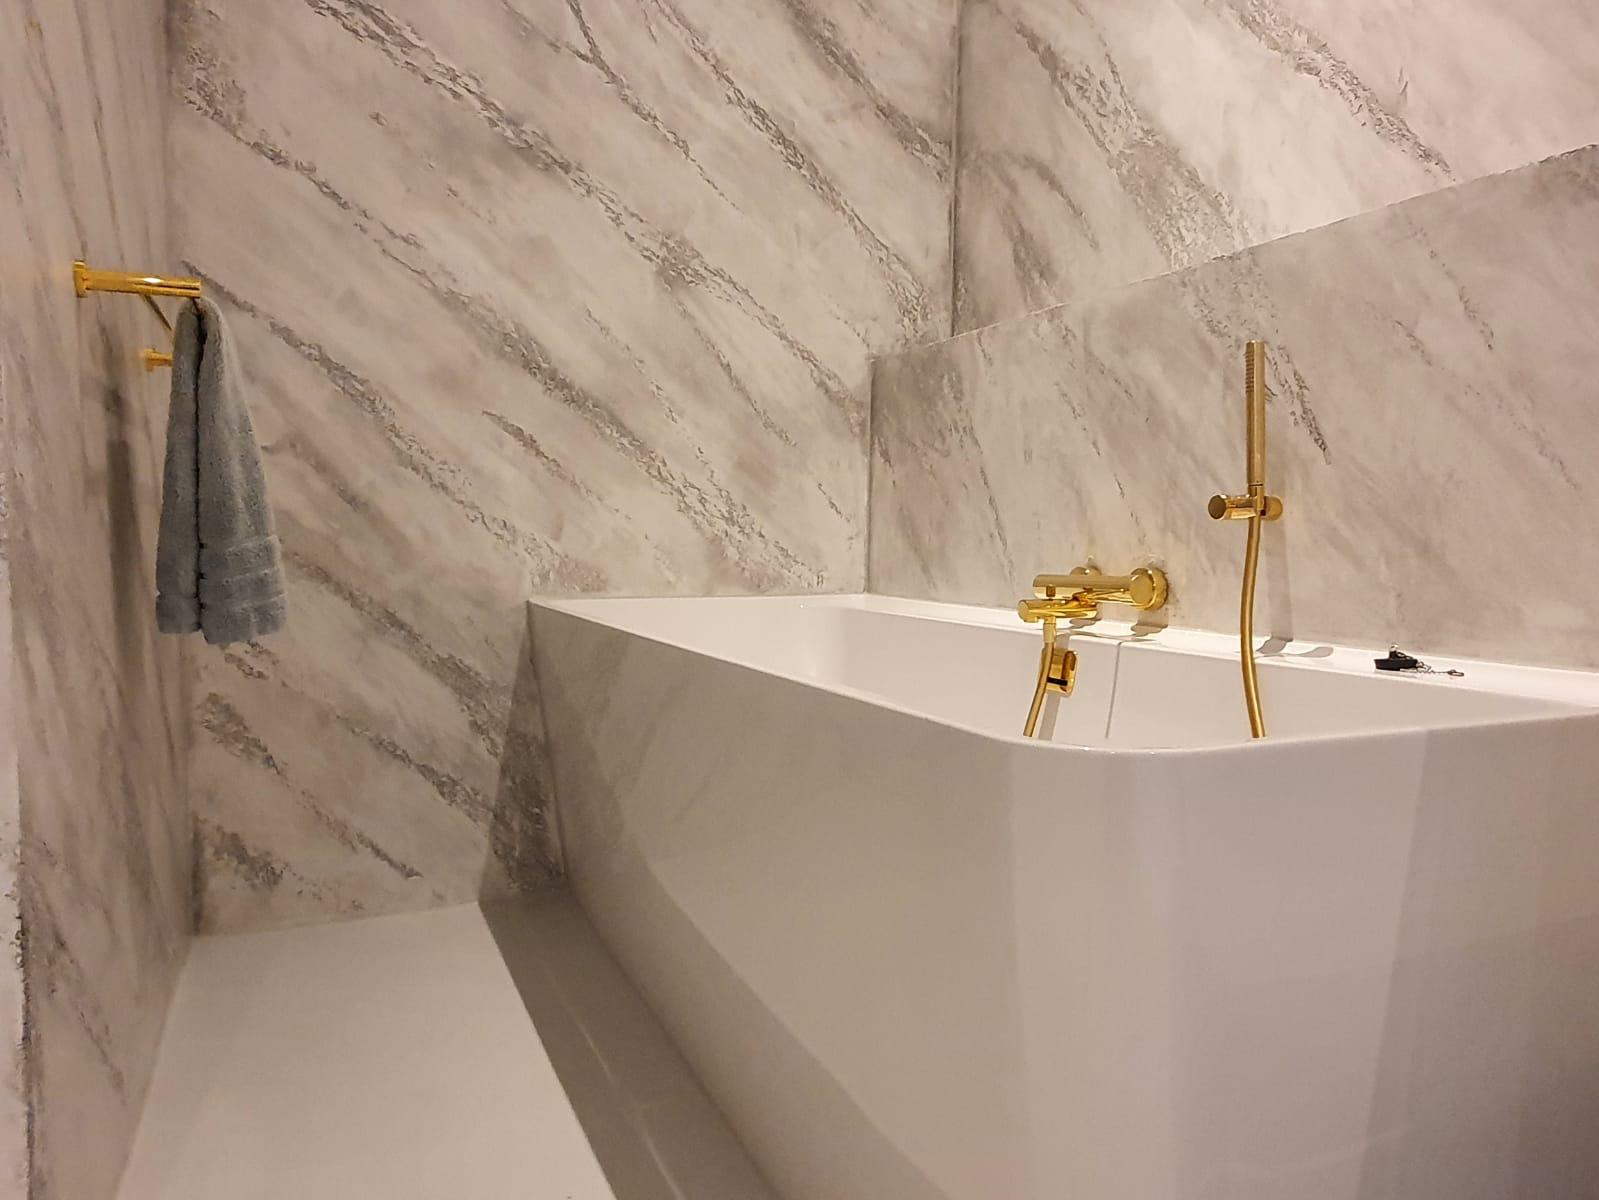 Complete badkamer gestuukt met gouden kranen